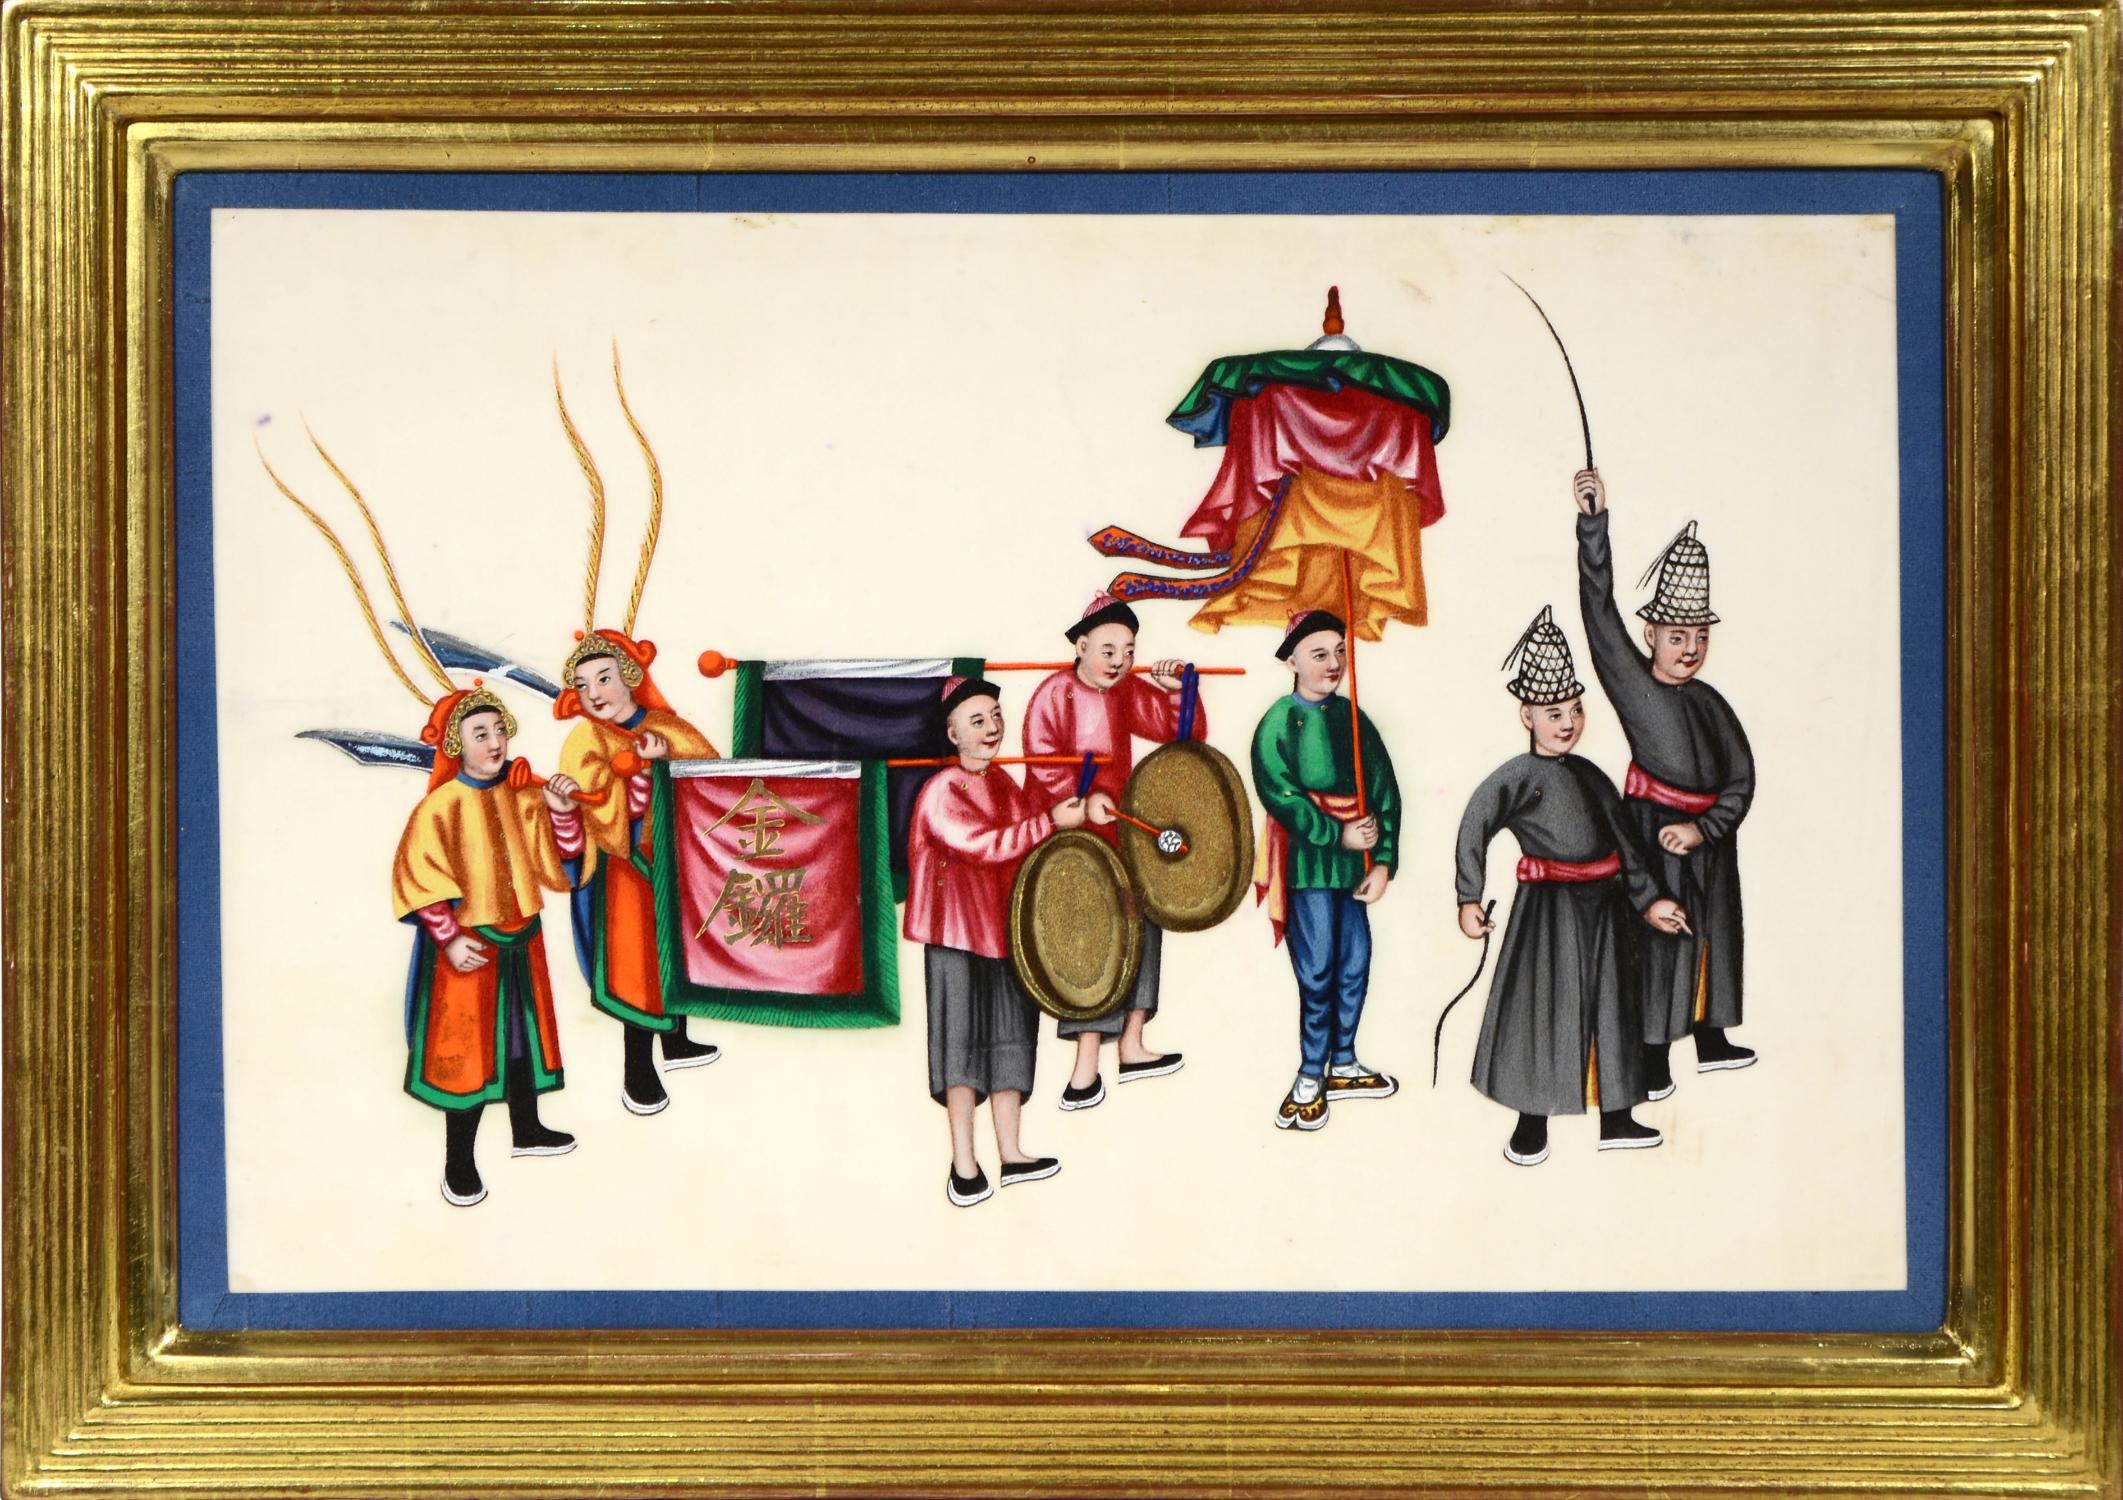 [Aquarelles d'exportation chinoises sur papier sulfurisé]
Un ensemble de douze processions.
Chine, vers 1870].

Études à l'aquarelle et à la gouache sur papier sulfurisé, encadrées par un ruban de soie bleue, toutes montées. 

La peinture à la